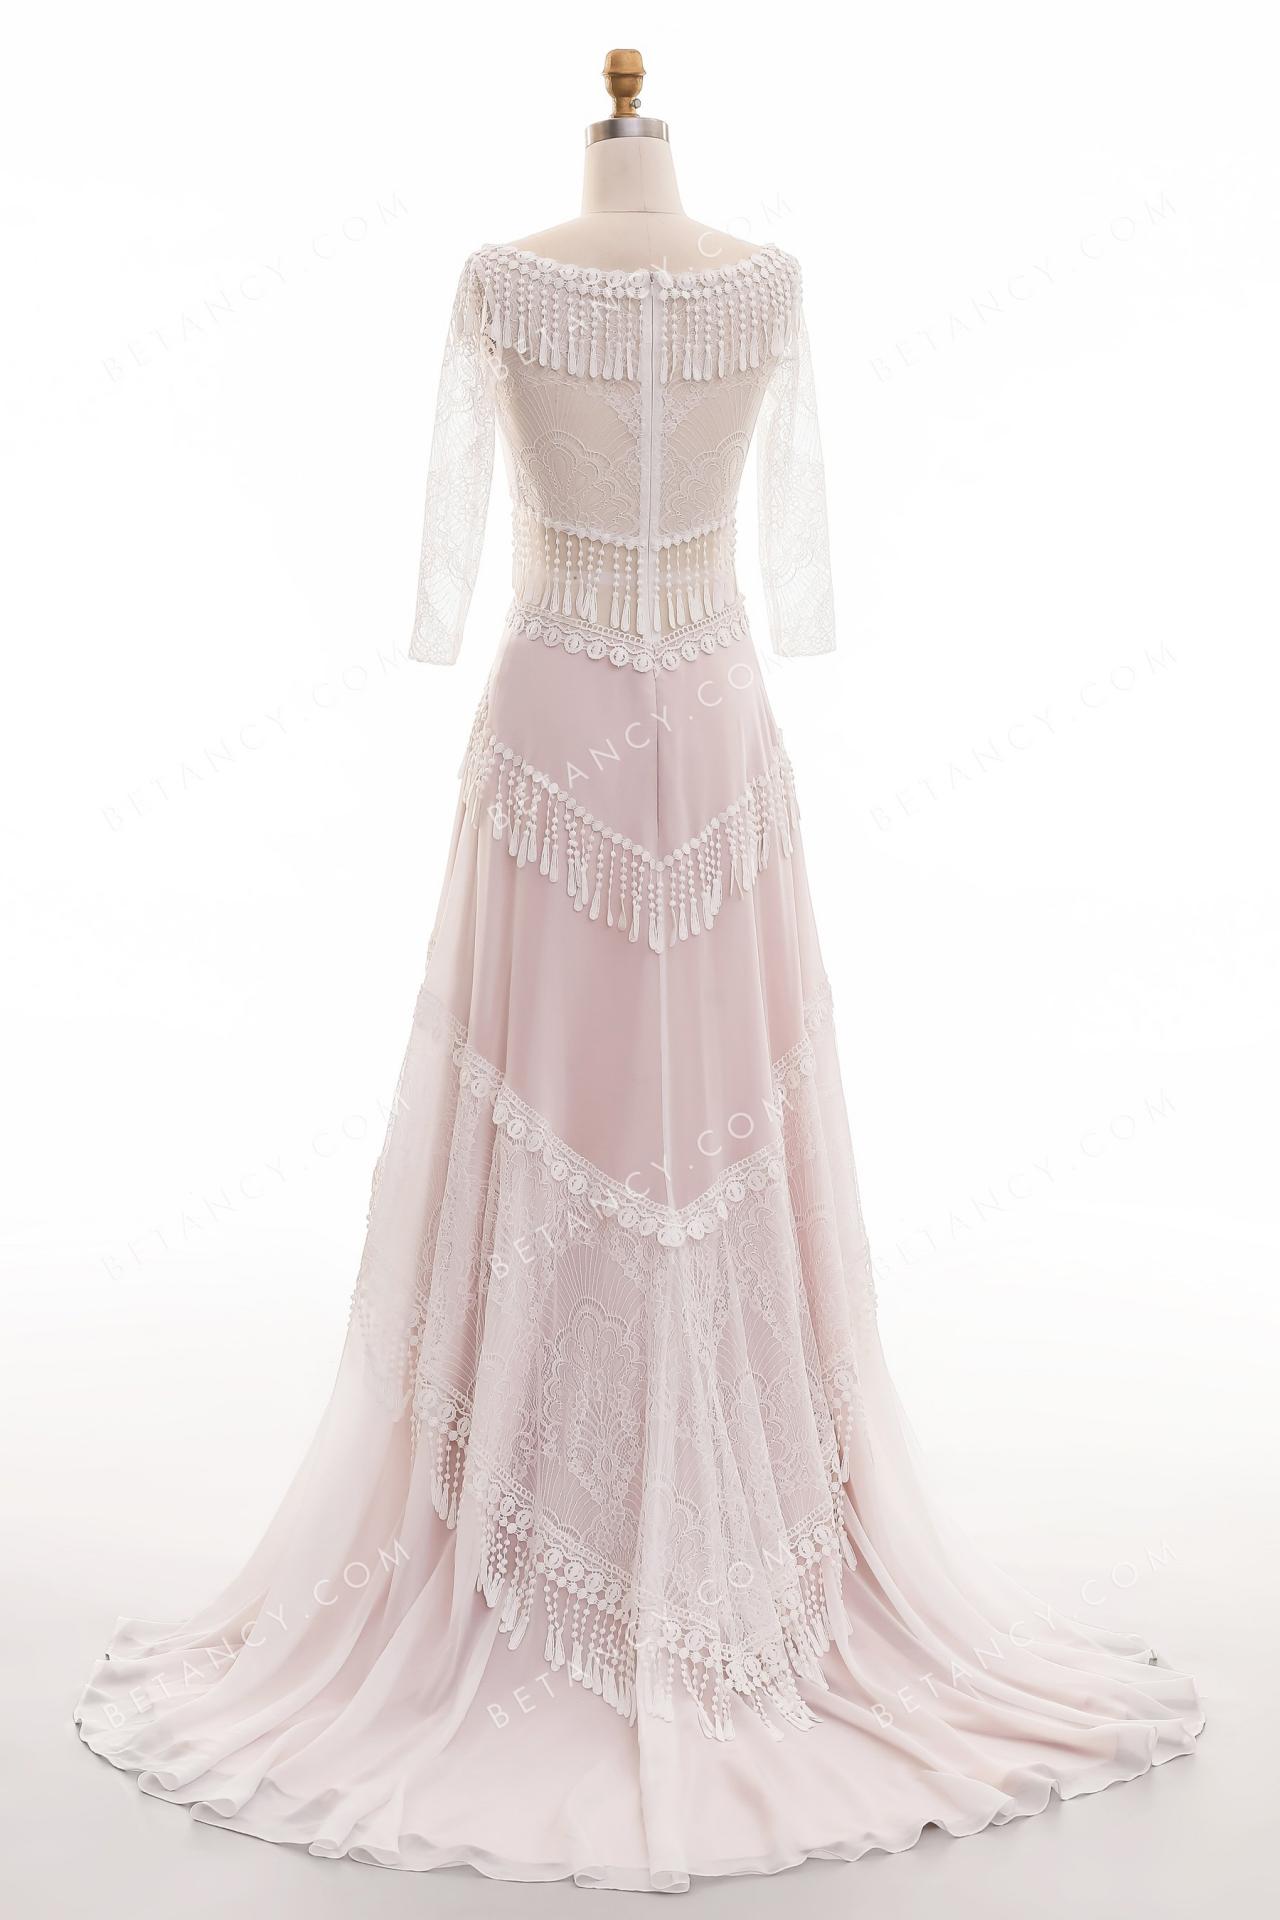 Romantic lace and chiffon wedding dress 5